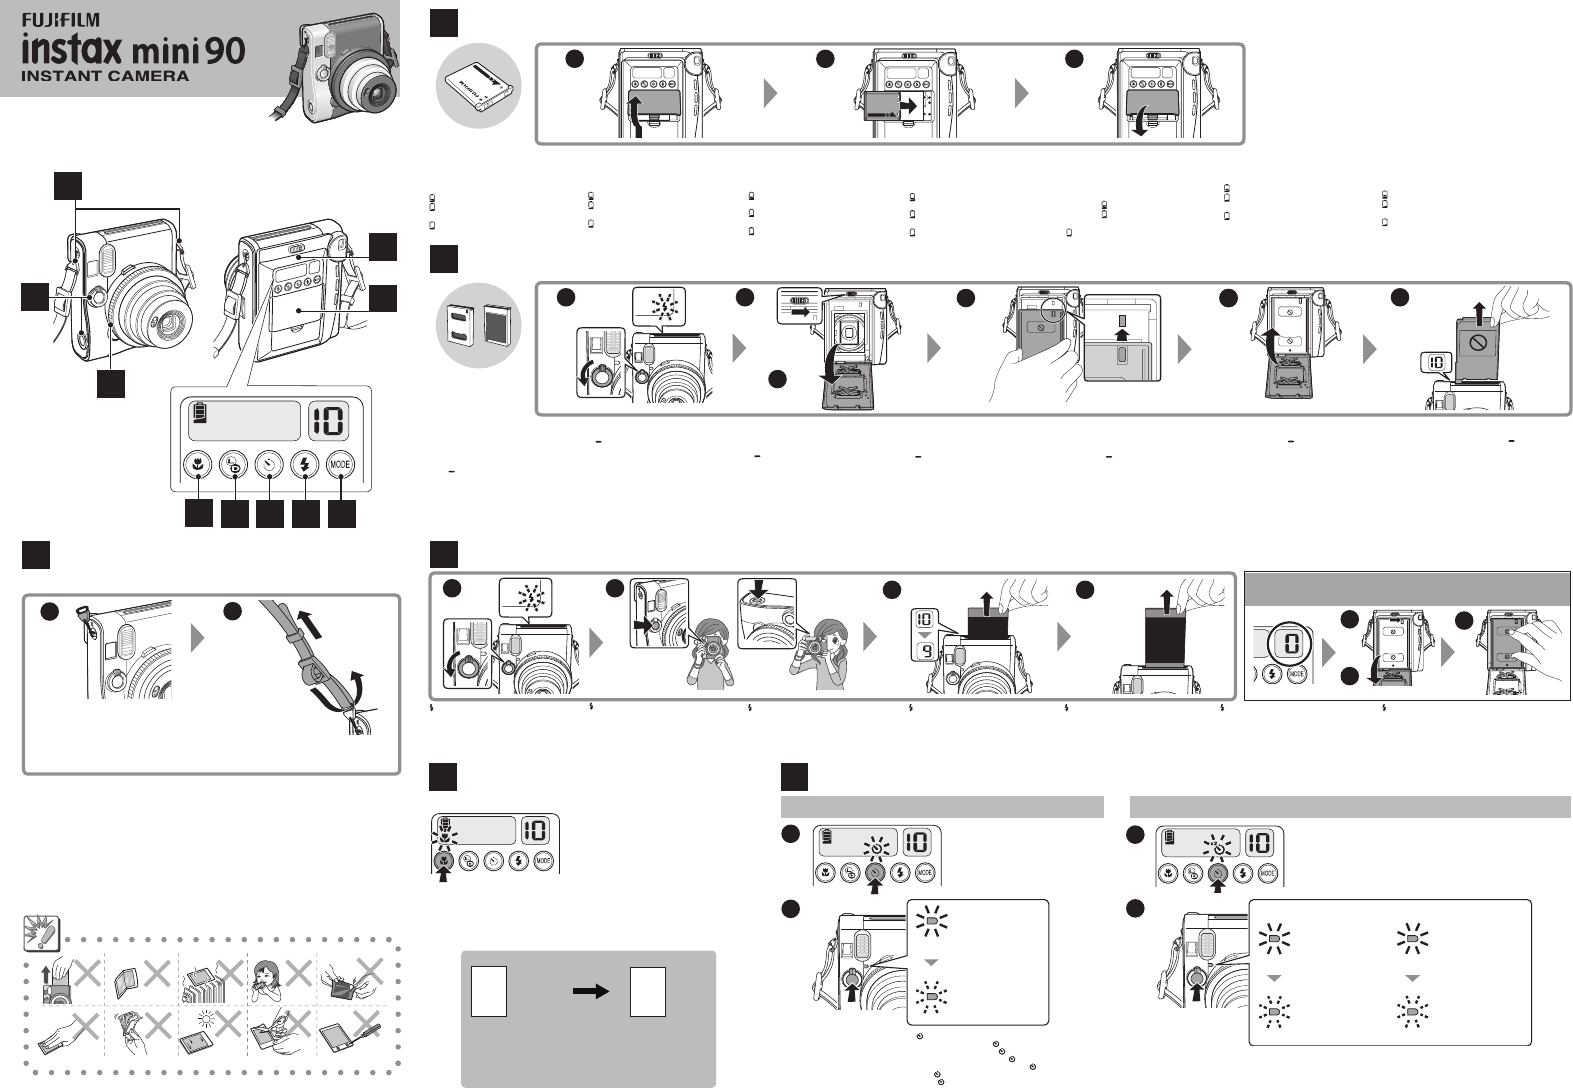 mei naaien tegenkomen Handleiding Fujifilm Instax Mini 90 (pagina 1 van 2) (Duits, Engels, Frans,  Spaans)